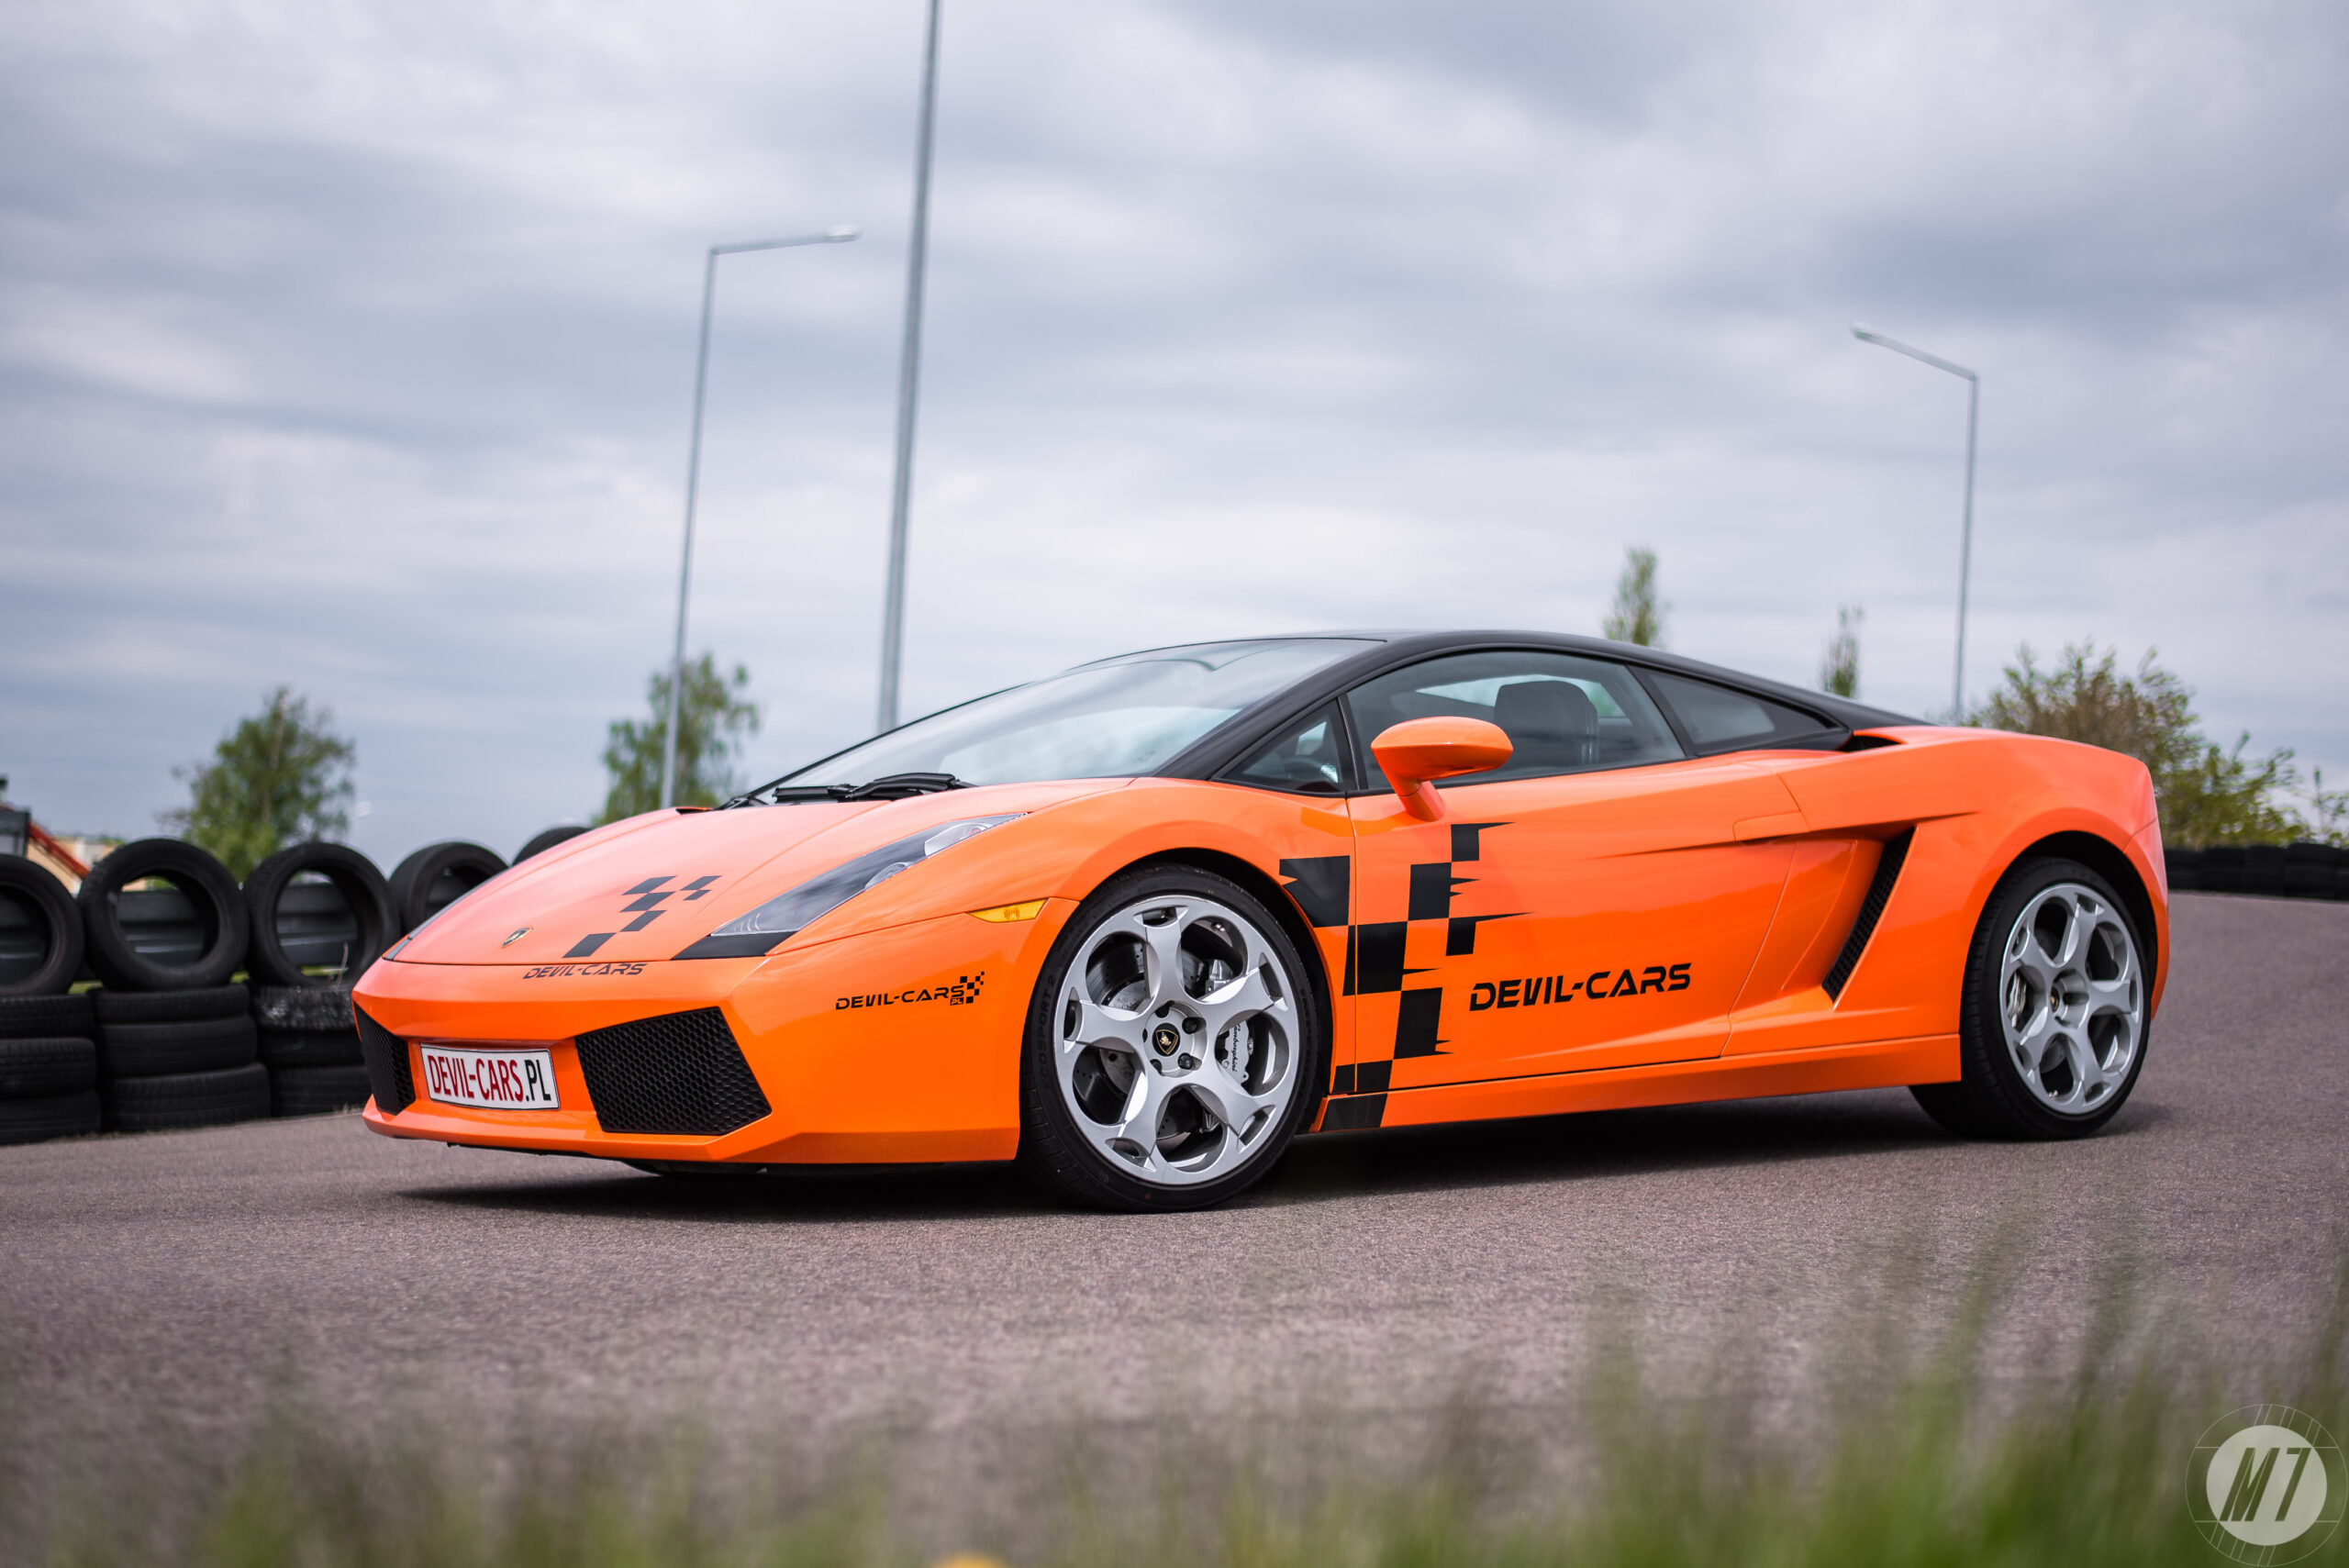 Karta podarunkowa na przejażdżkę sportowym samochodem Lamborghini Gallardo